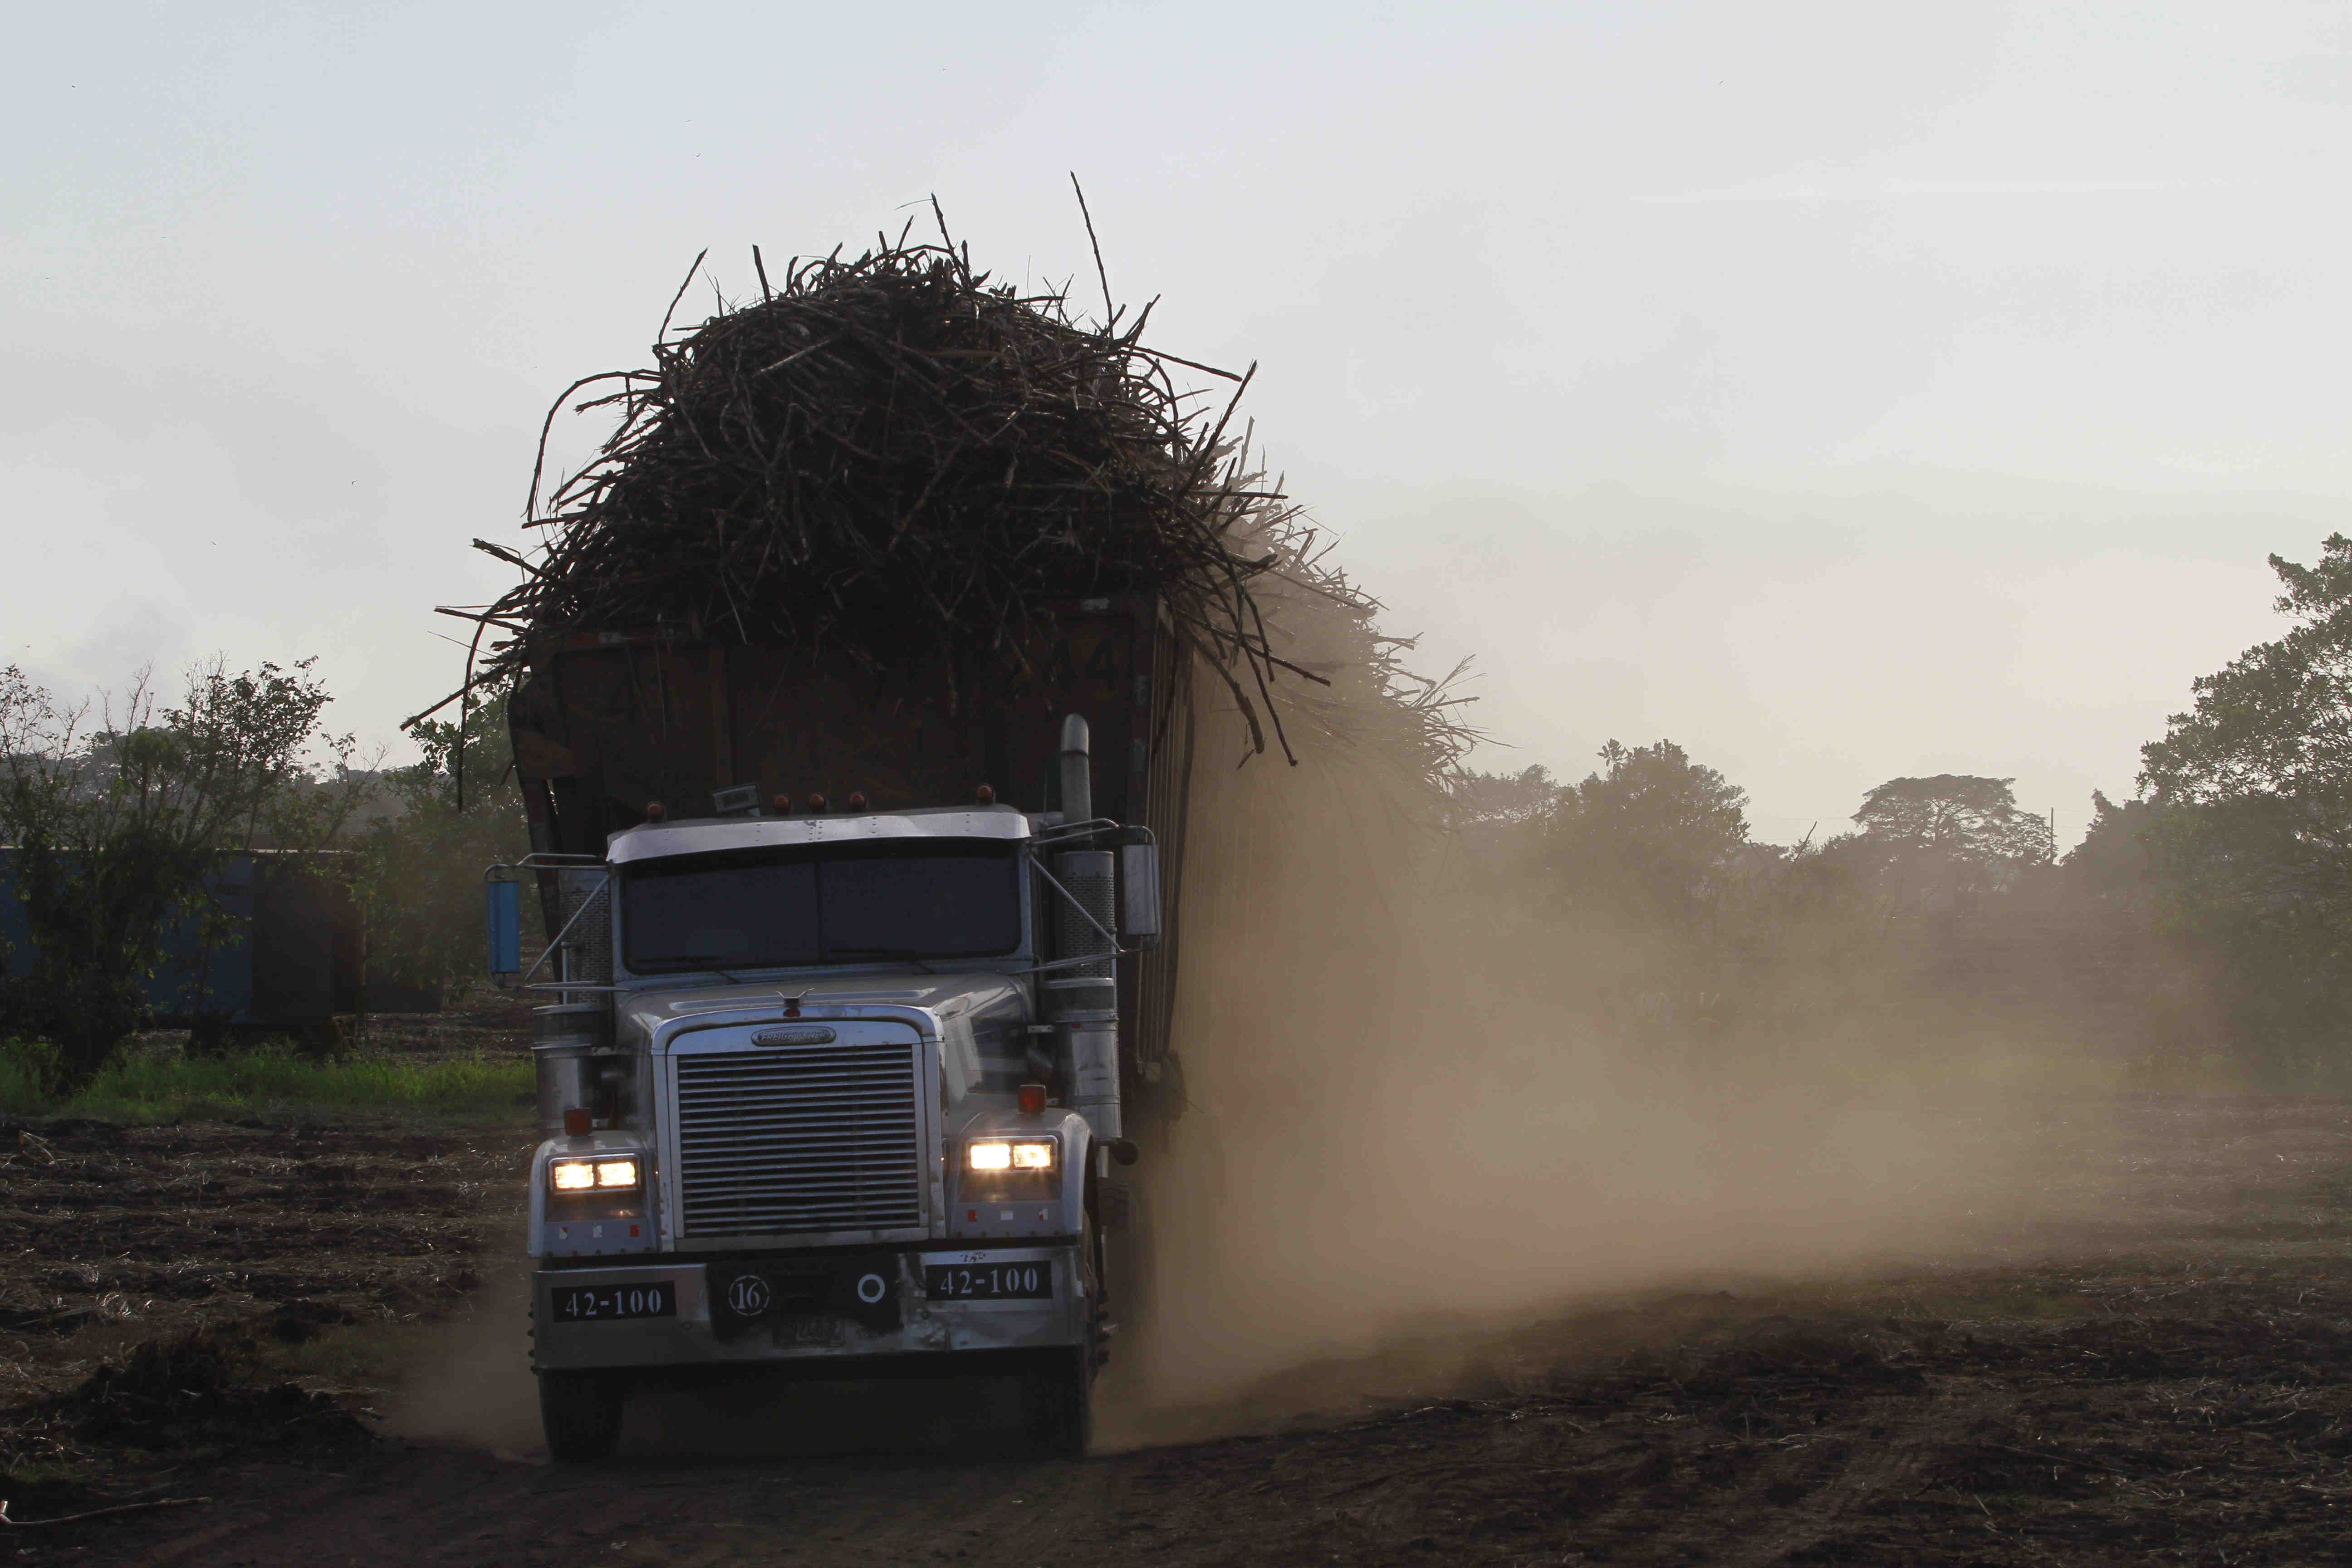 Guatemala despacha azúcar a 58 países y la zafra 2018-19 esta por finalizar con una producción estable. (Foto Prensa Libre: Hemeroteca)